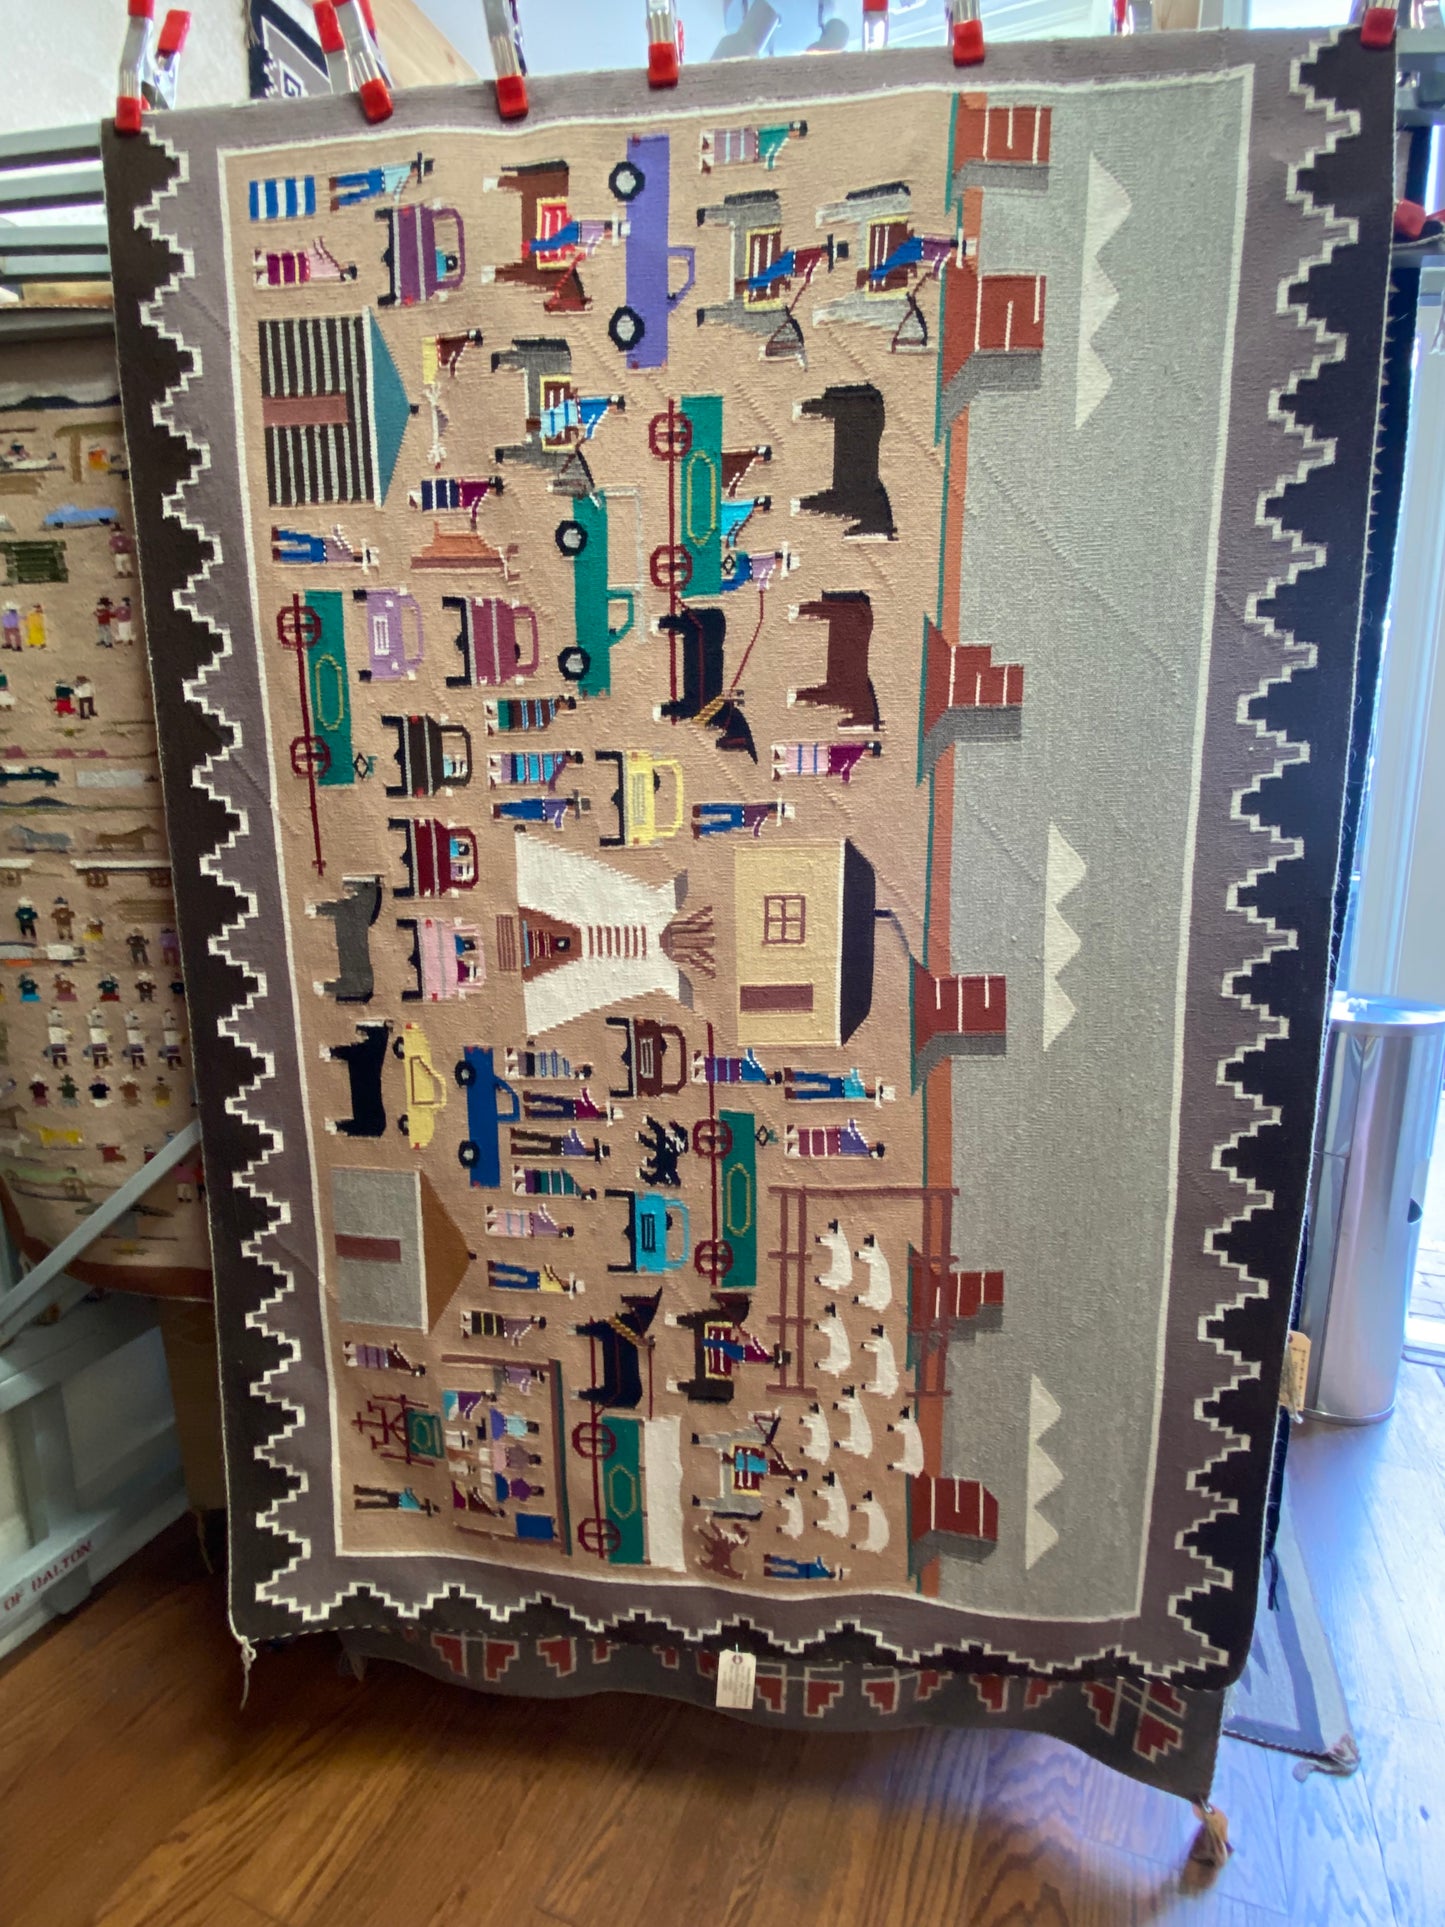 Authentic Navajo, Lifeways Pictorial Navajo weaving, navajo rug for sale, telluride furnishings, telluride gallery